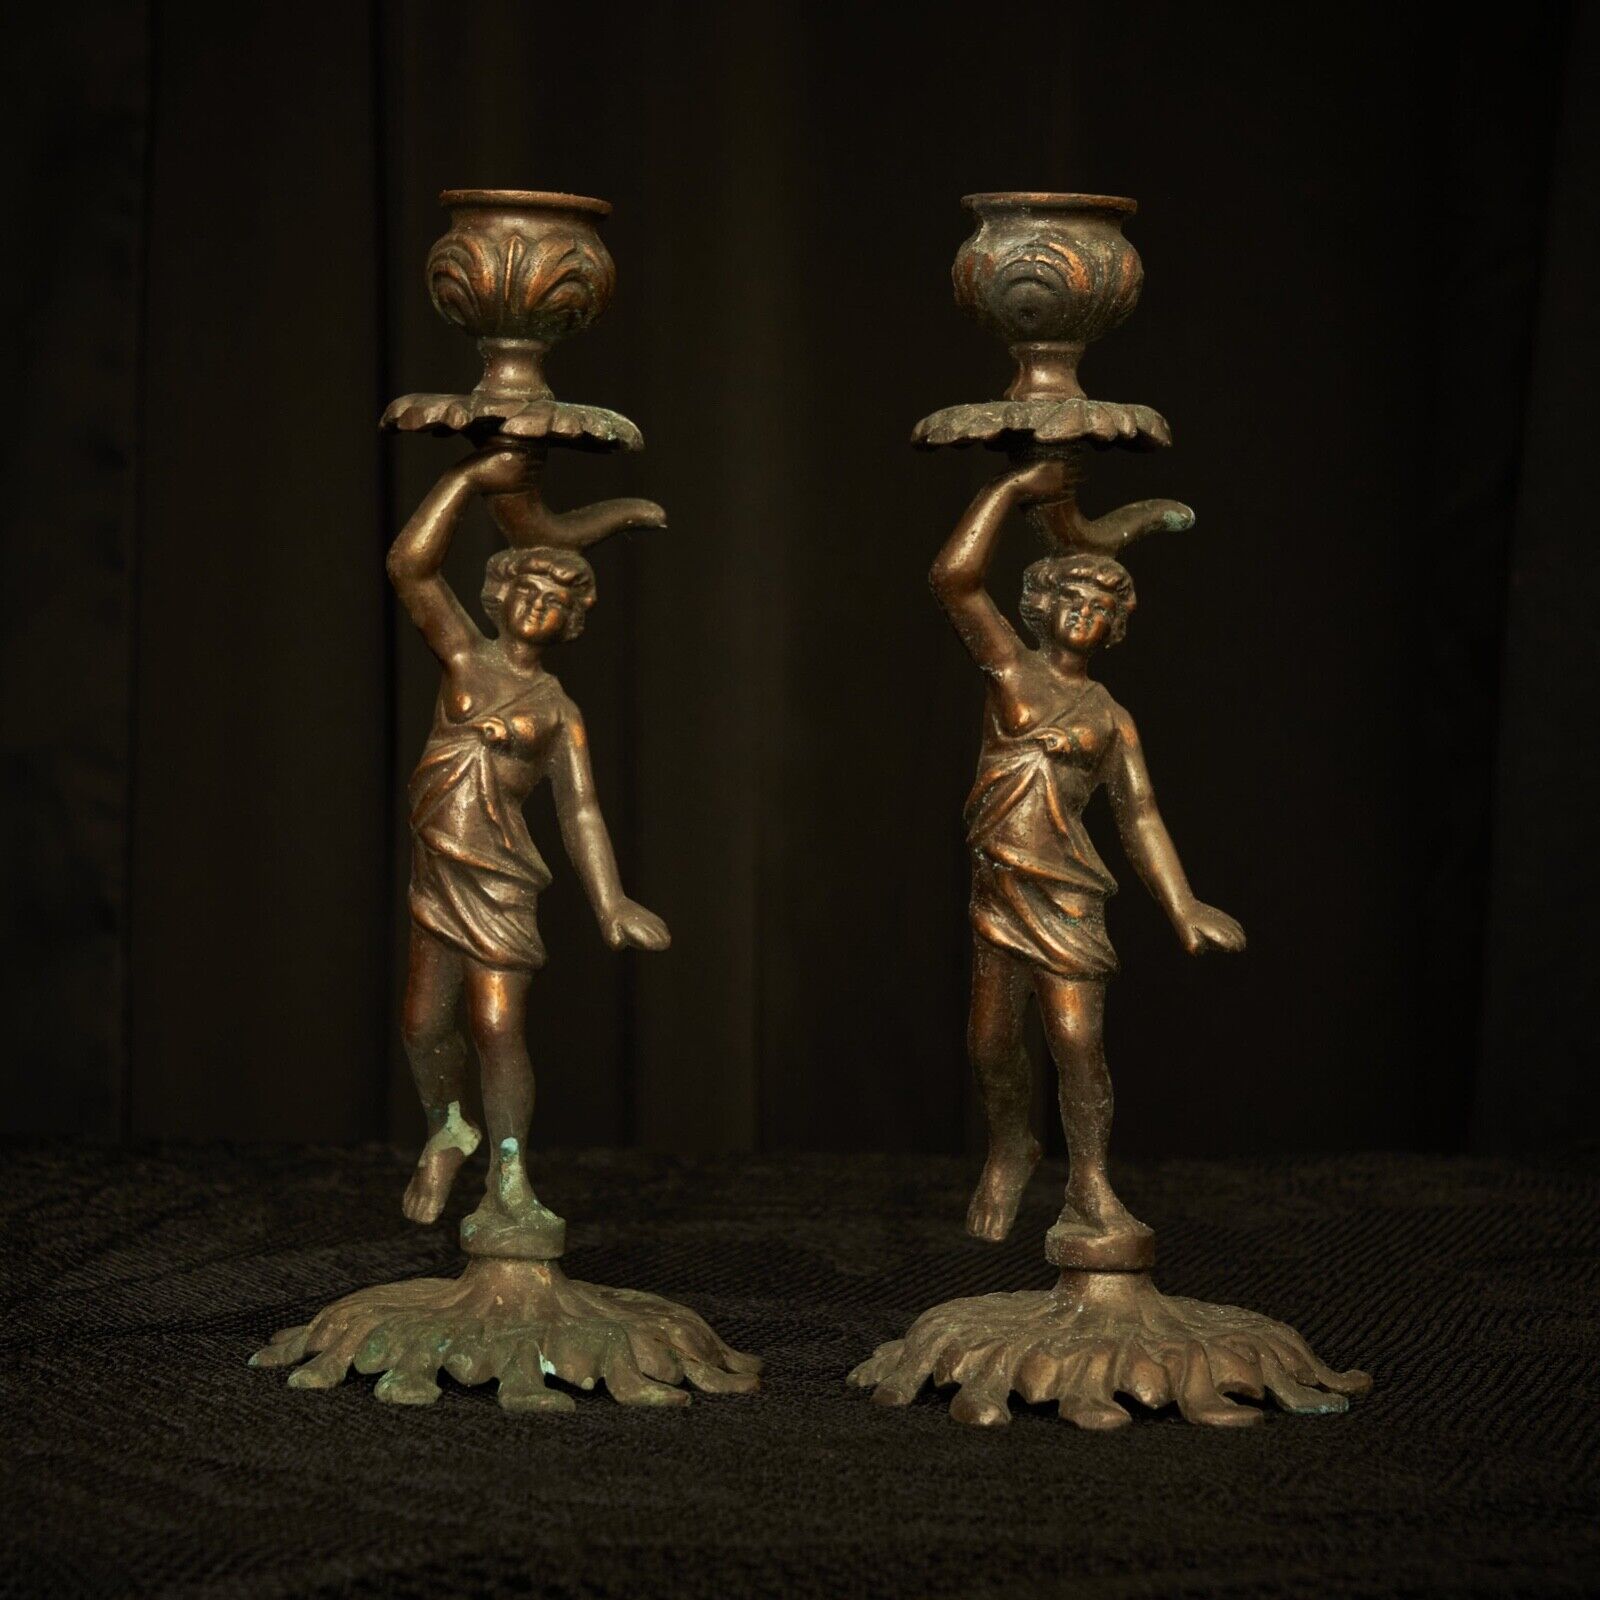 Waterbearer Girl Metal Candleholder, Vintage Belle Époque, Art Nouveau Pair